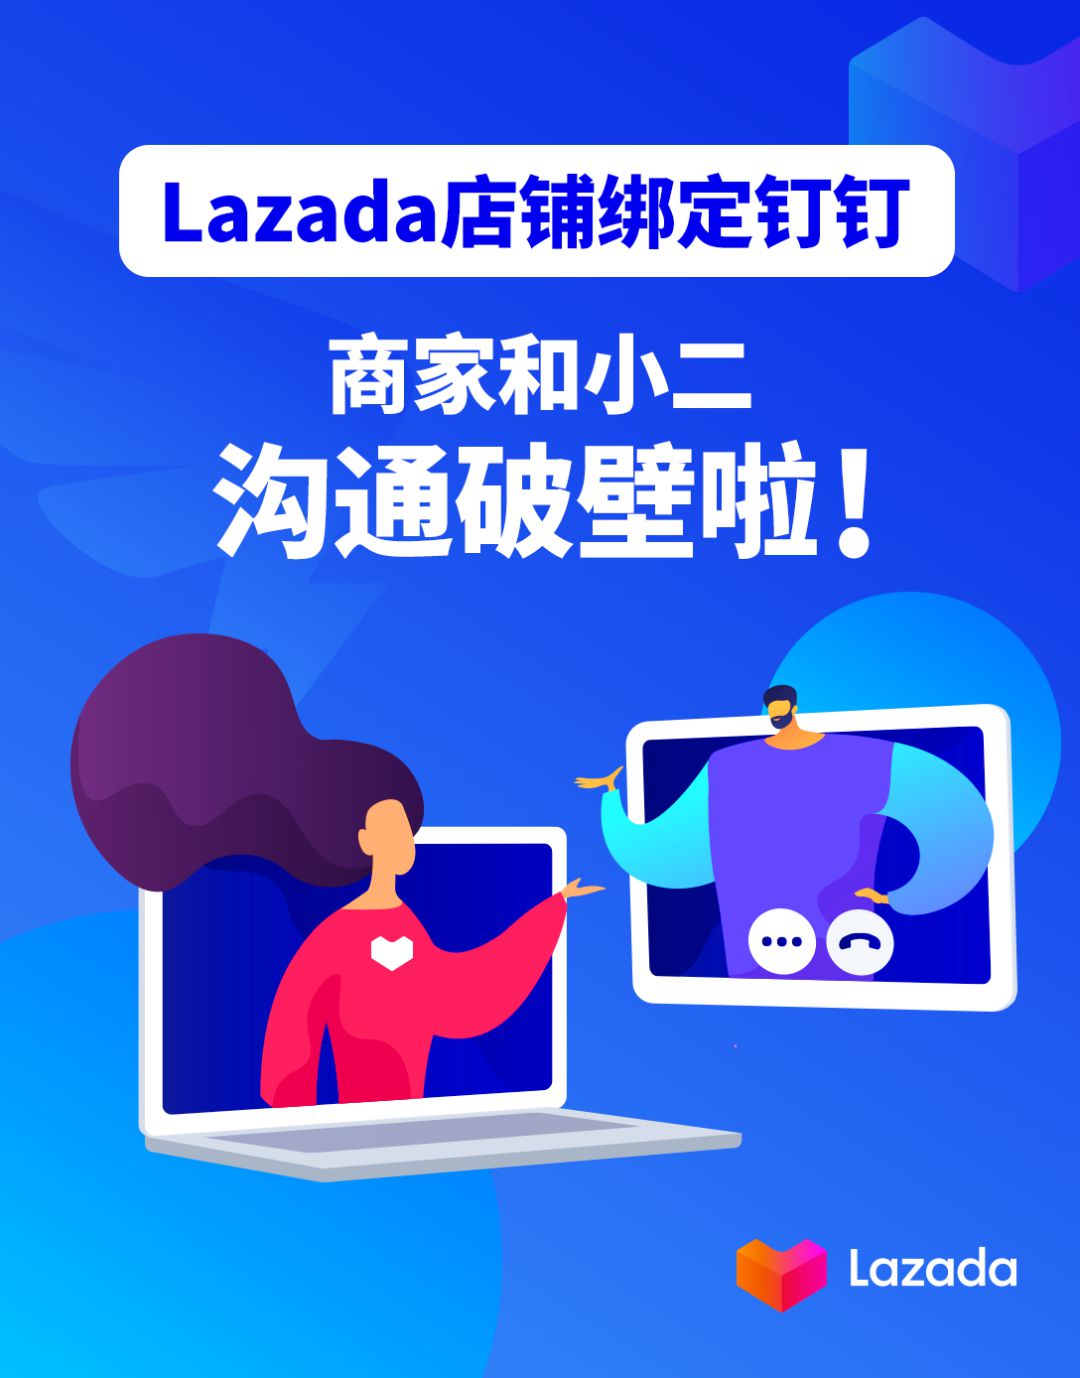 钉钉联合Lazada 推出钉钉绑定Lazada店铺账号功能_跨境电商_电商之家